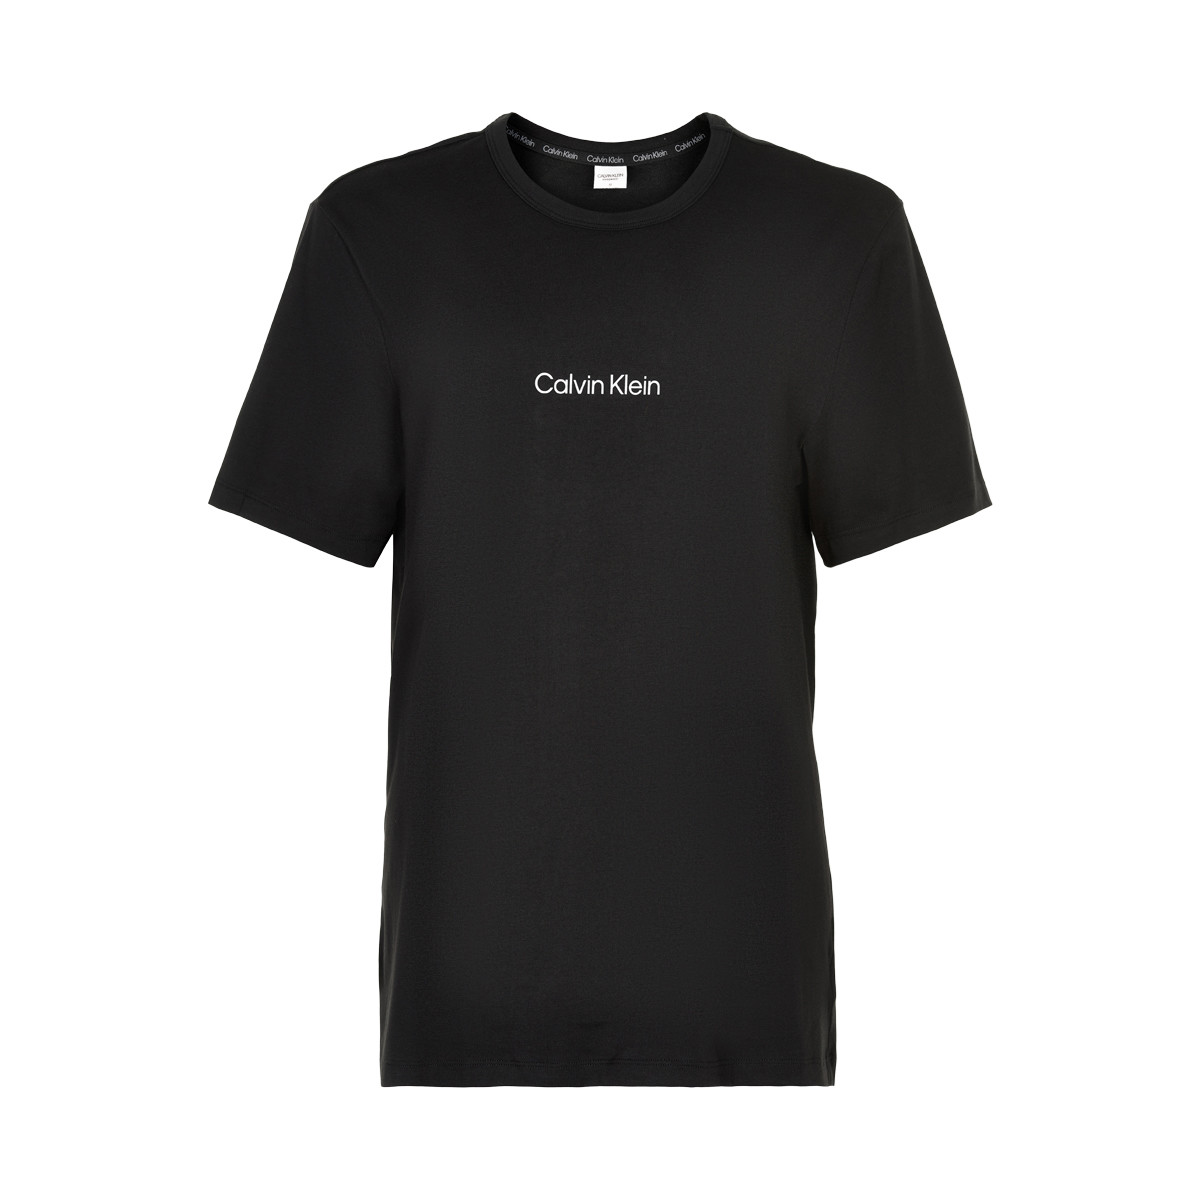 Se Calvin Klein T-shirt, Farve: Sort, Størrelse: XL, Dame hos Netlingeri.dk